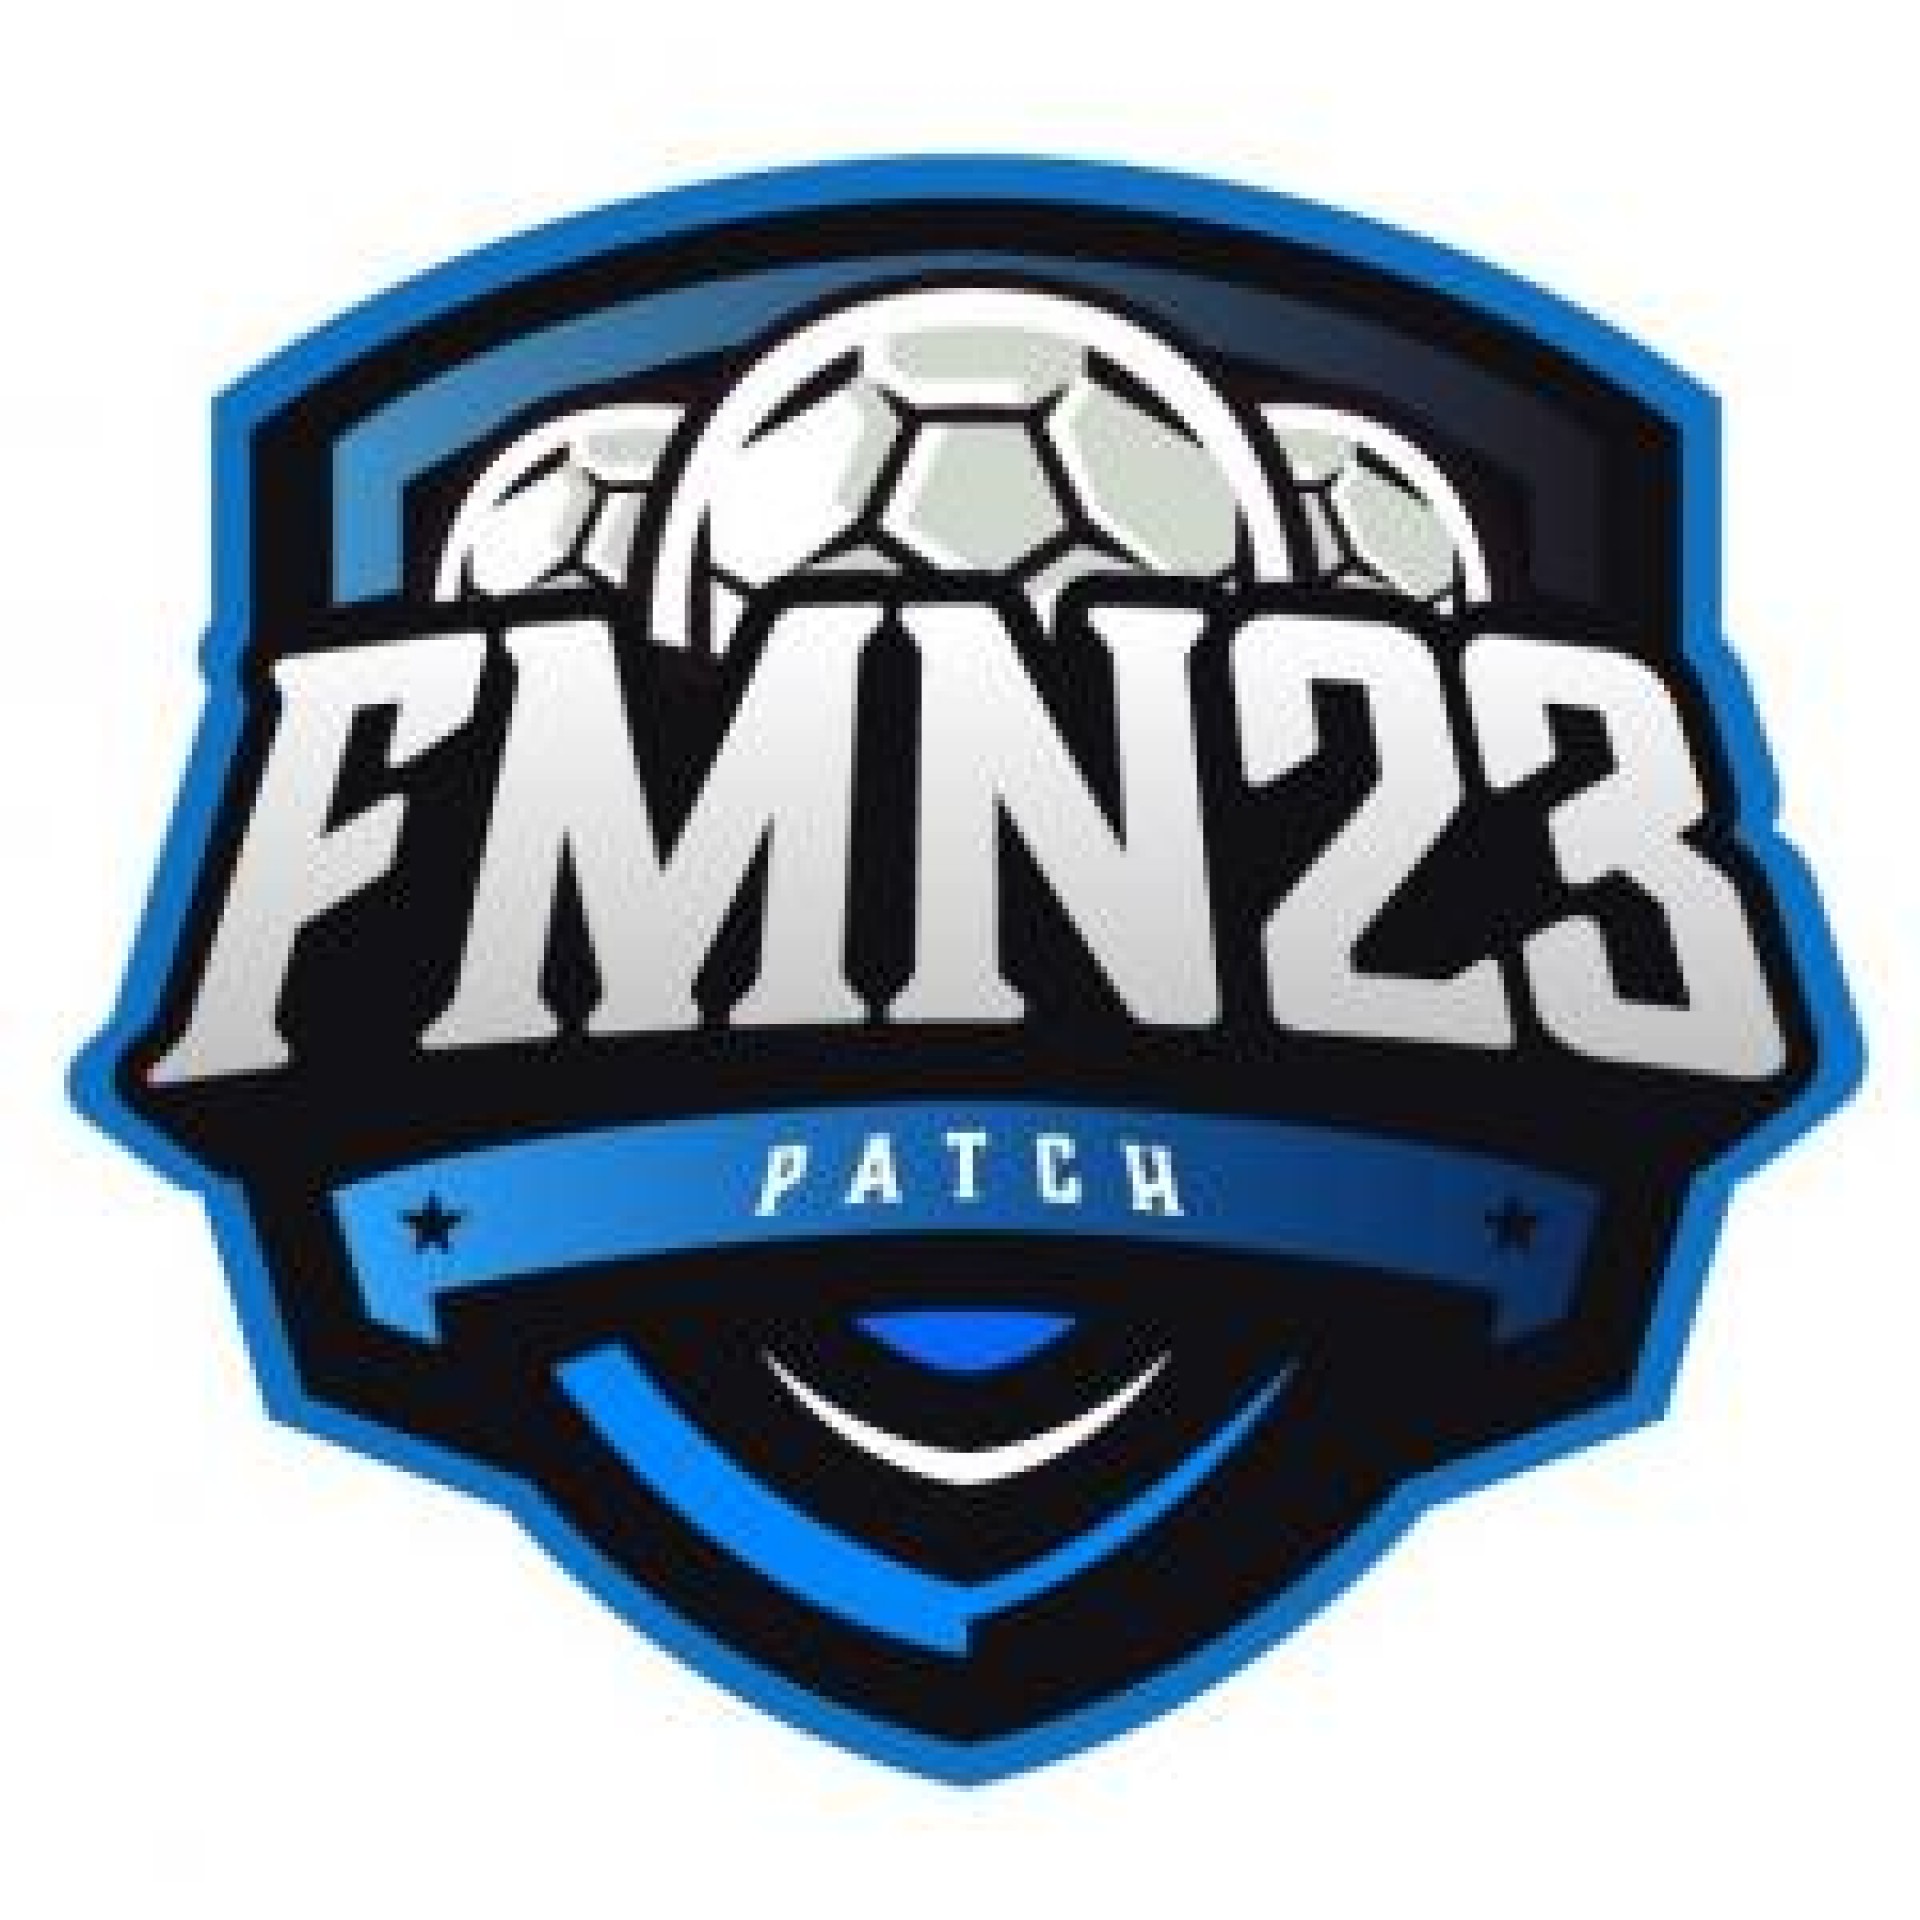 FMN 22 - Patch para FIFA 22 PC disponível - MUUH - FIFAMANIA News - Jogue  com emoção.